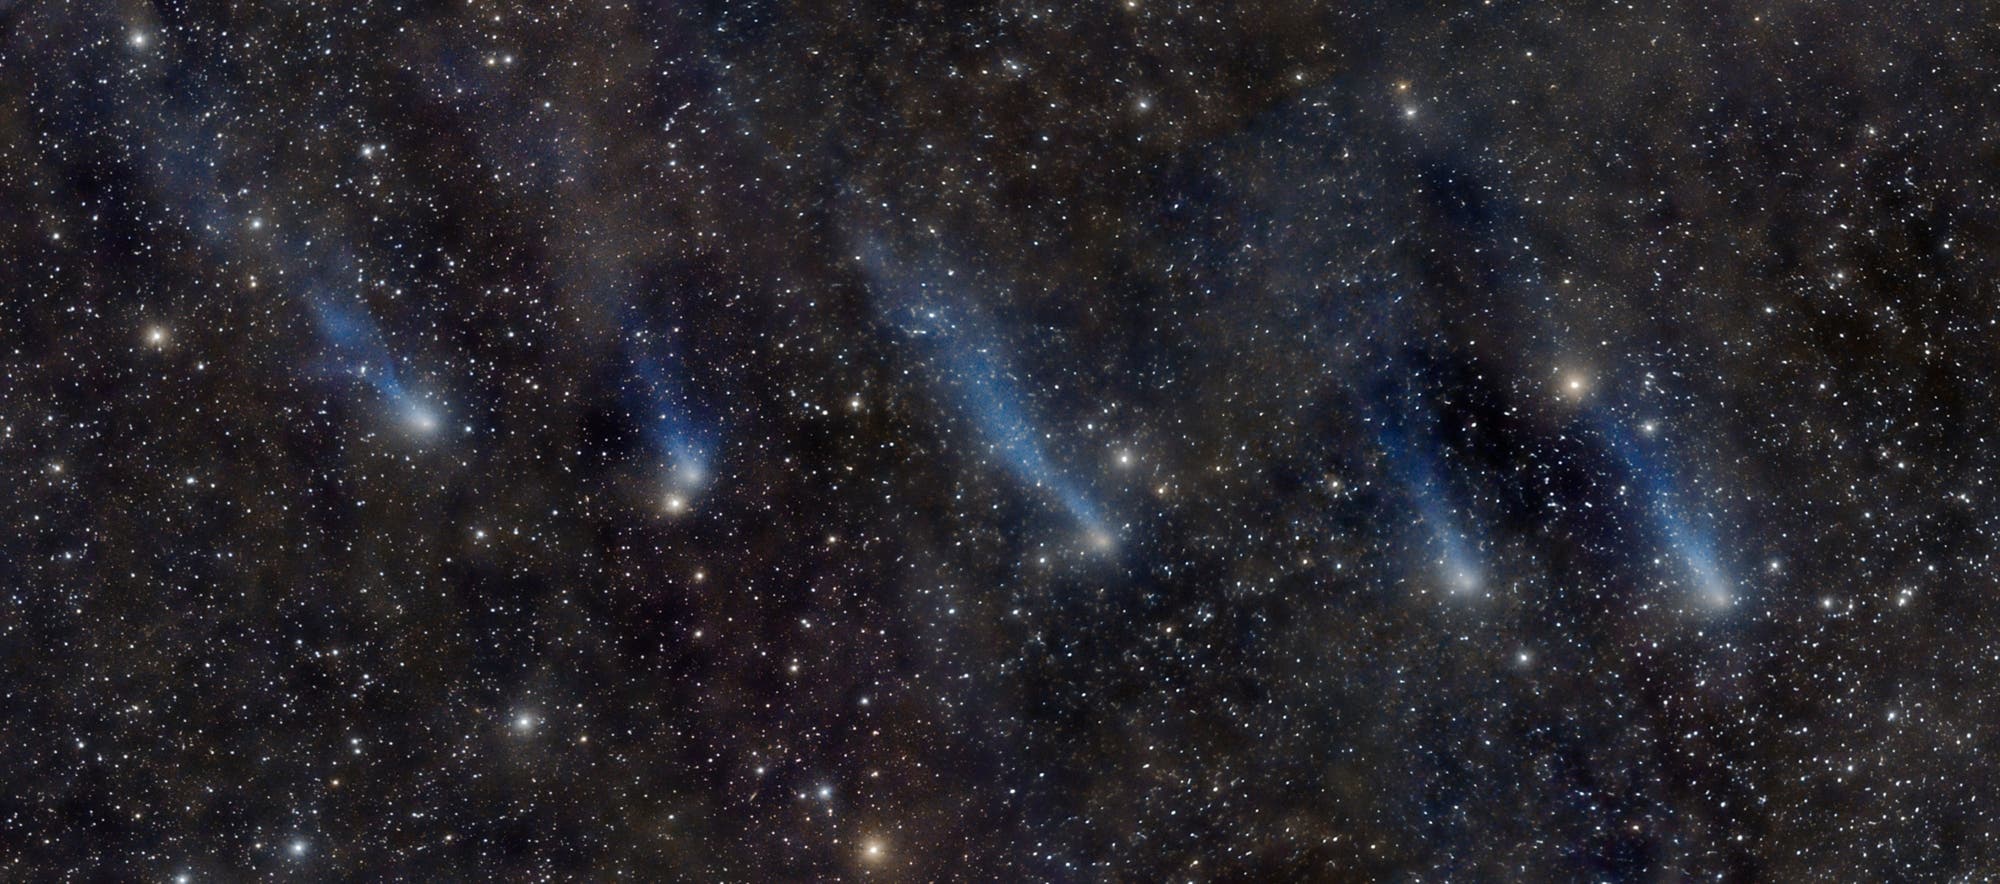 10 days of comet C/2016 R2 PANSTARRS